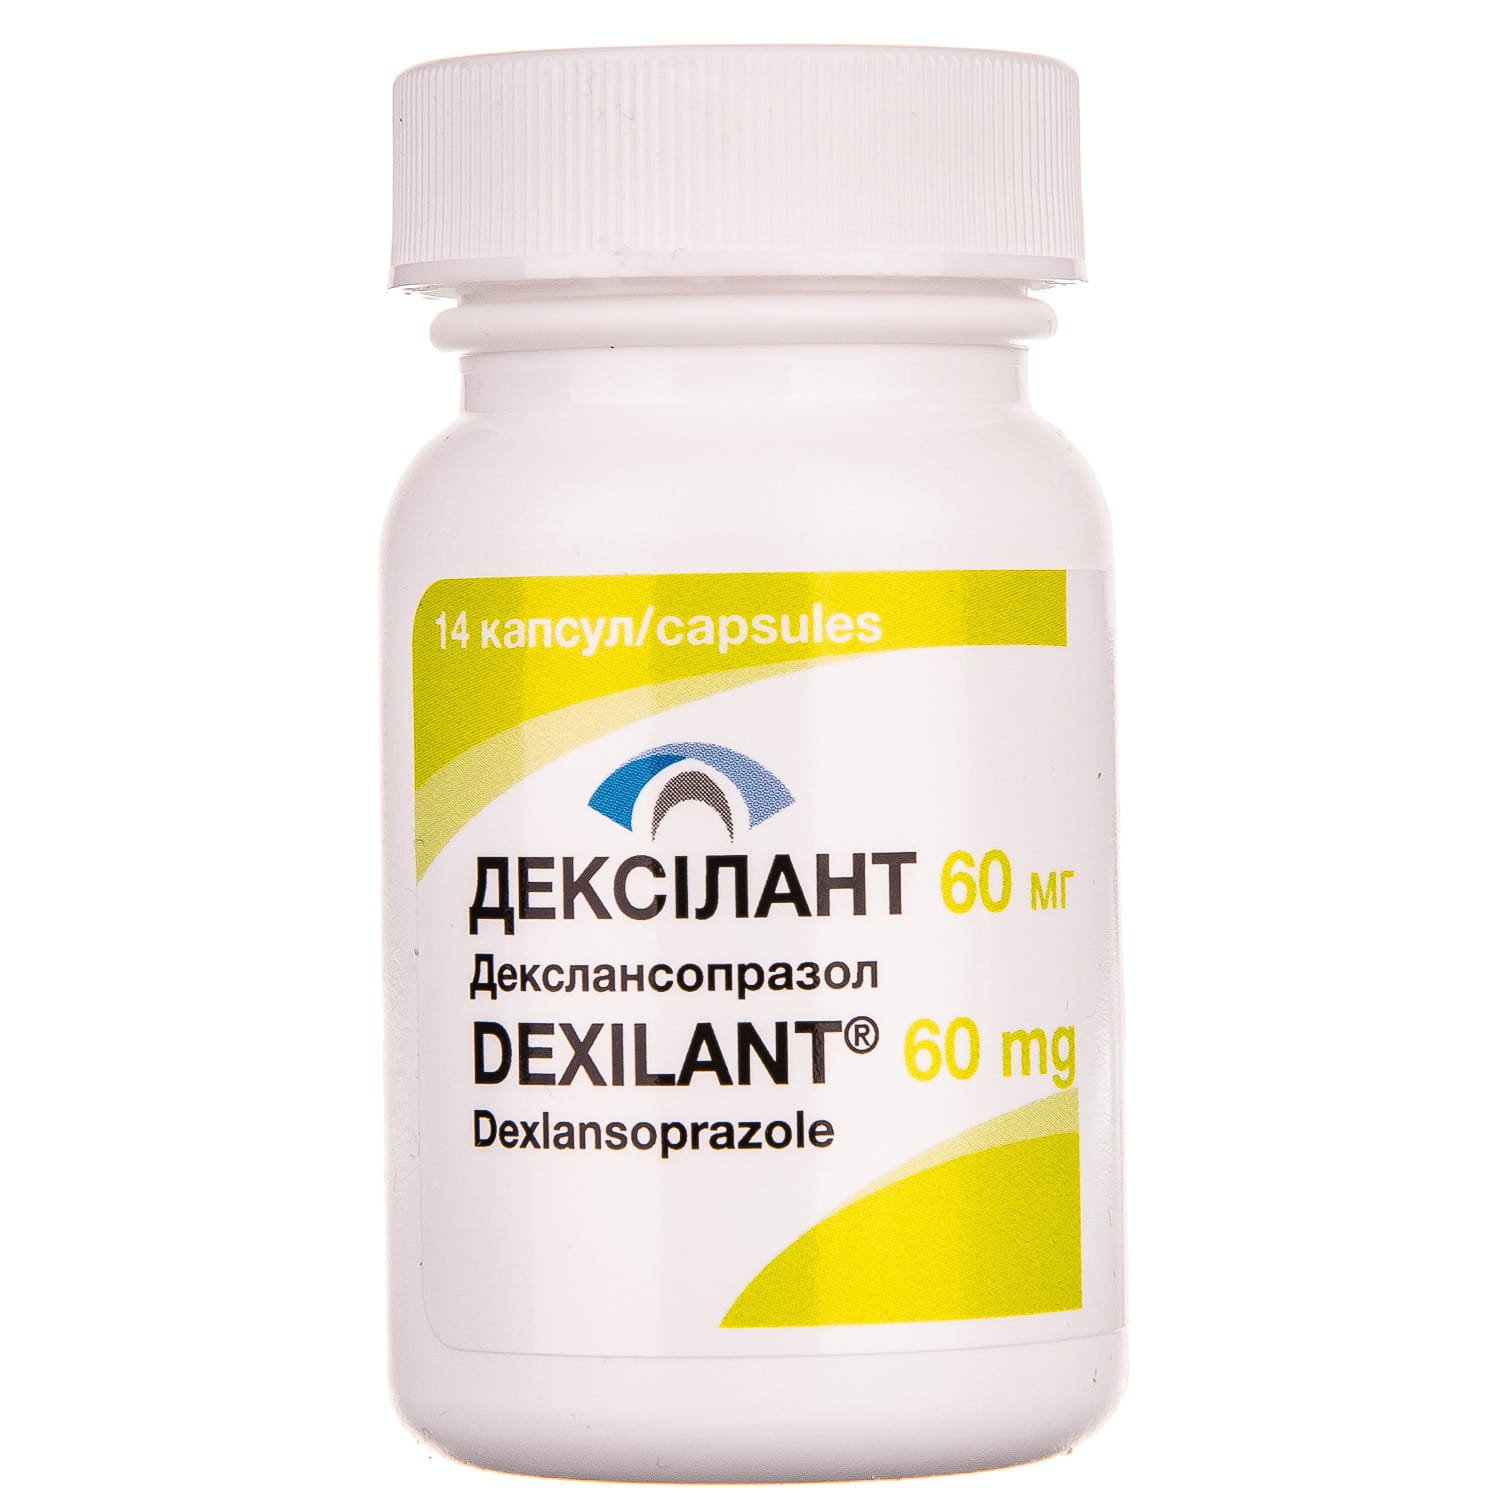 Дексилант капсулы по 60 мг, 14 шт.: инструкция, цена, отзывы, аналоги .